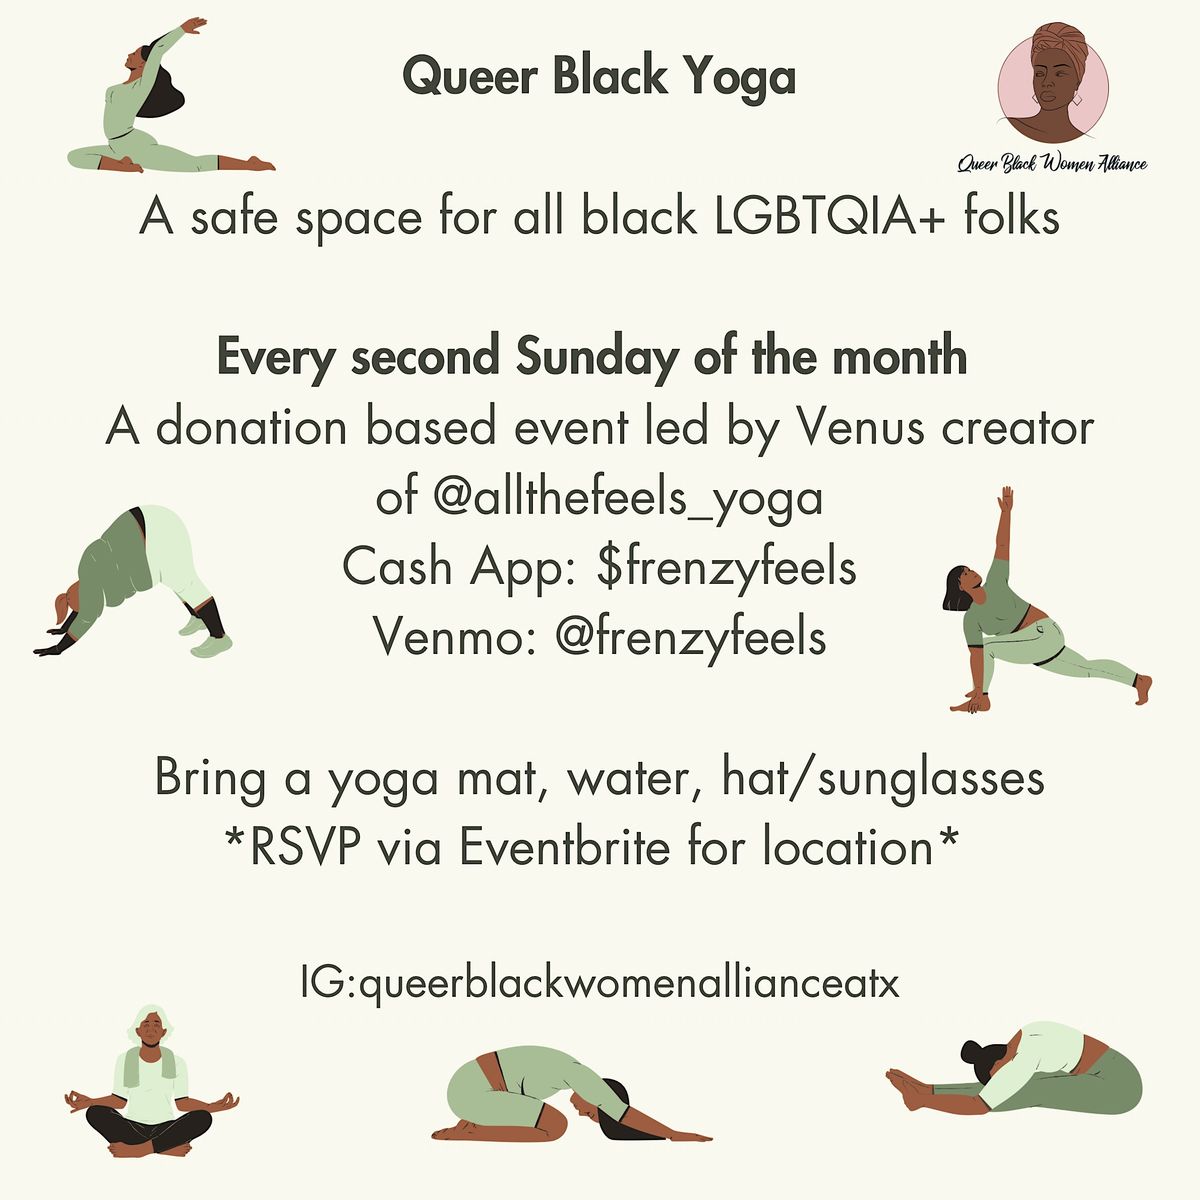 Queer Black Yoga